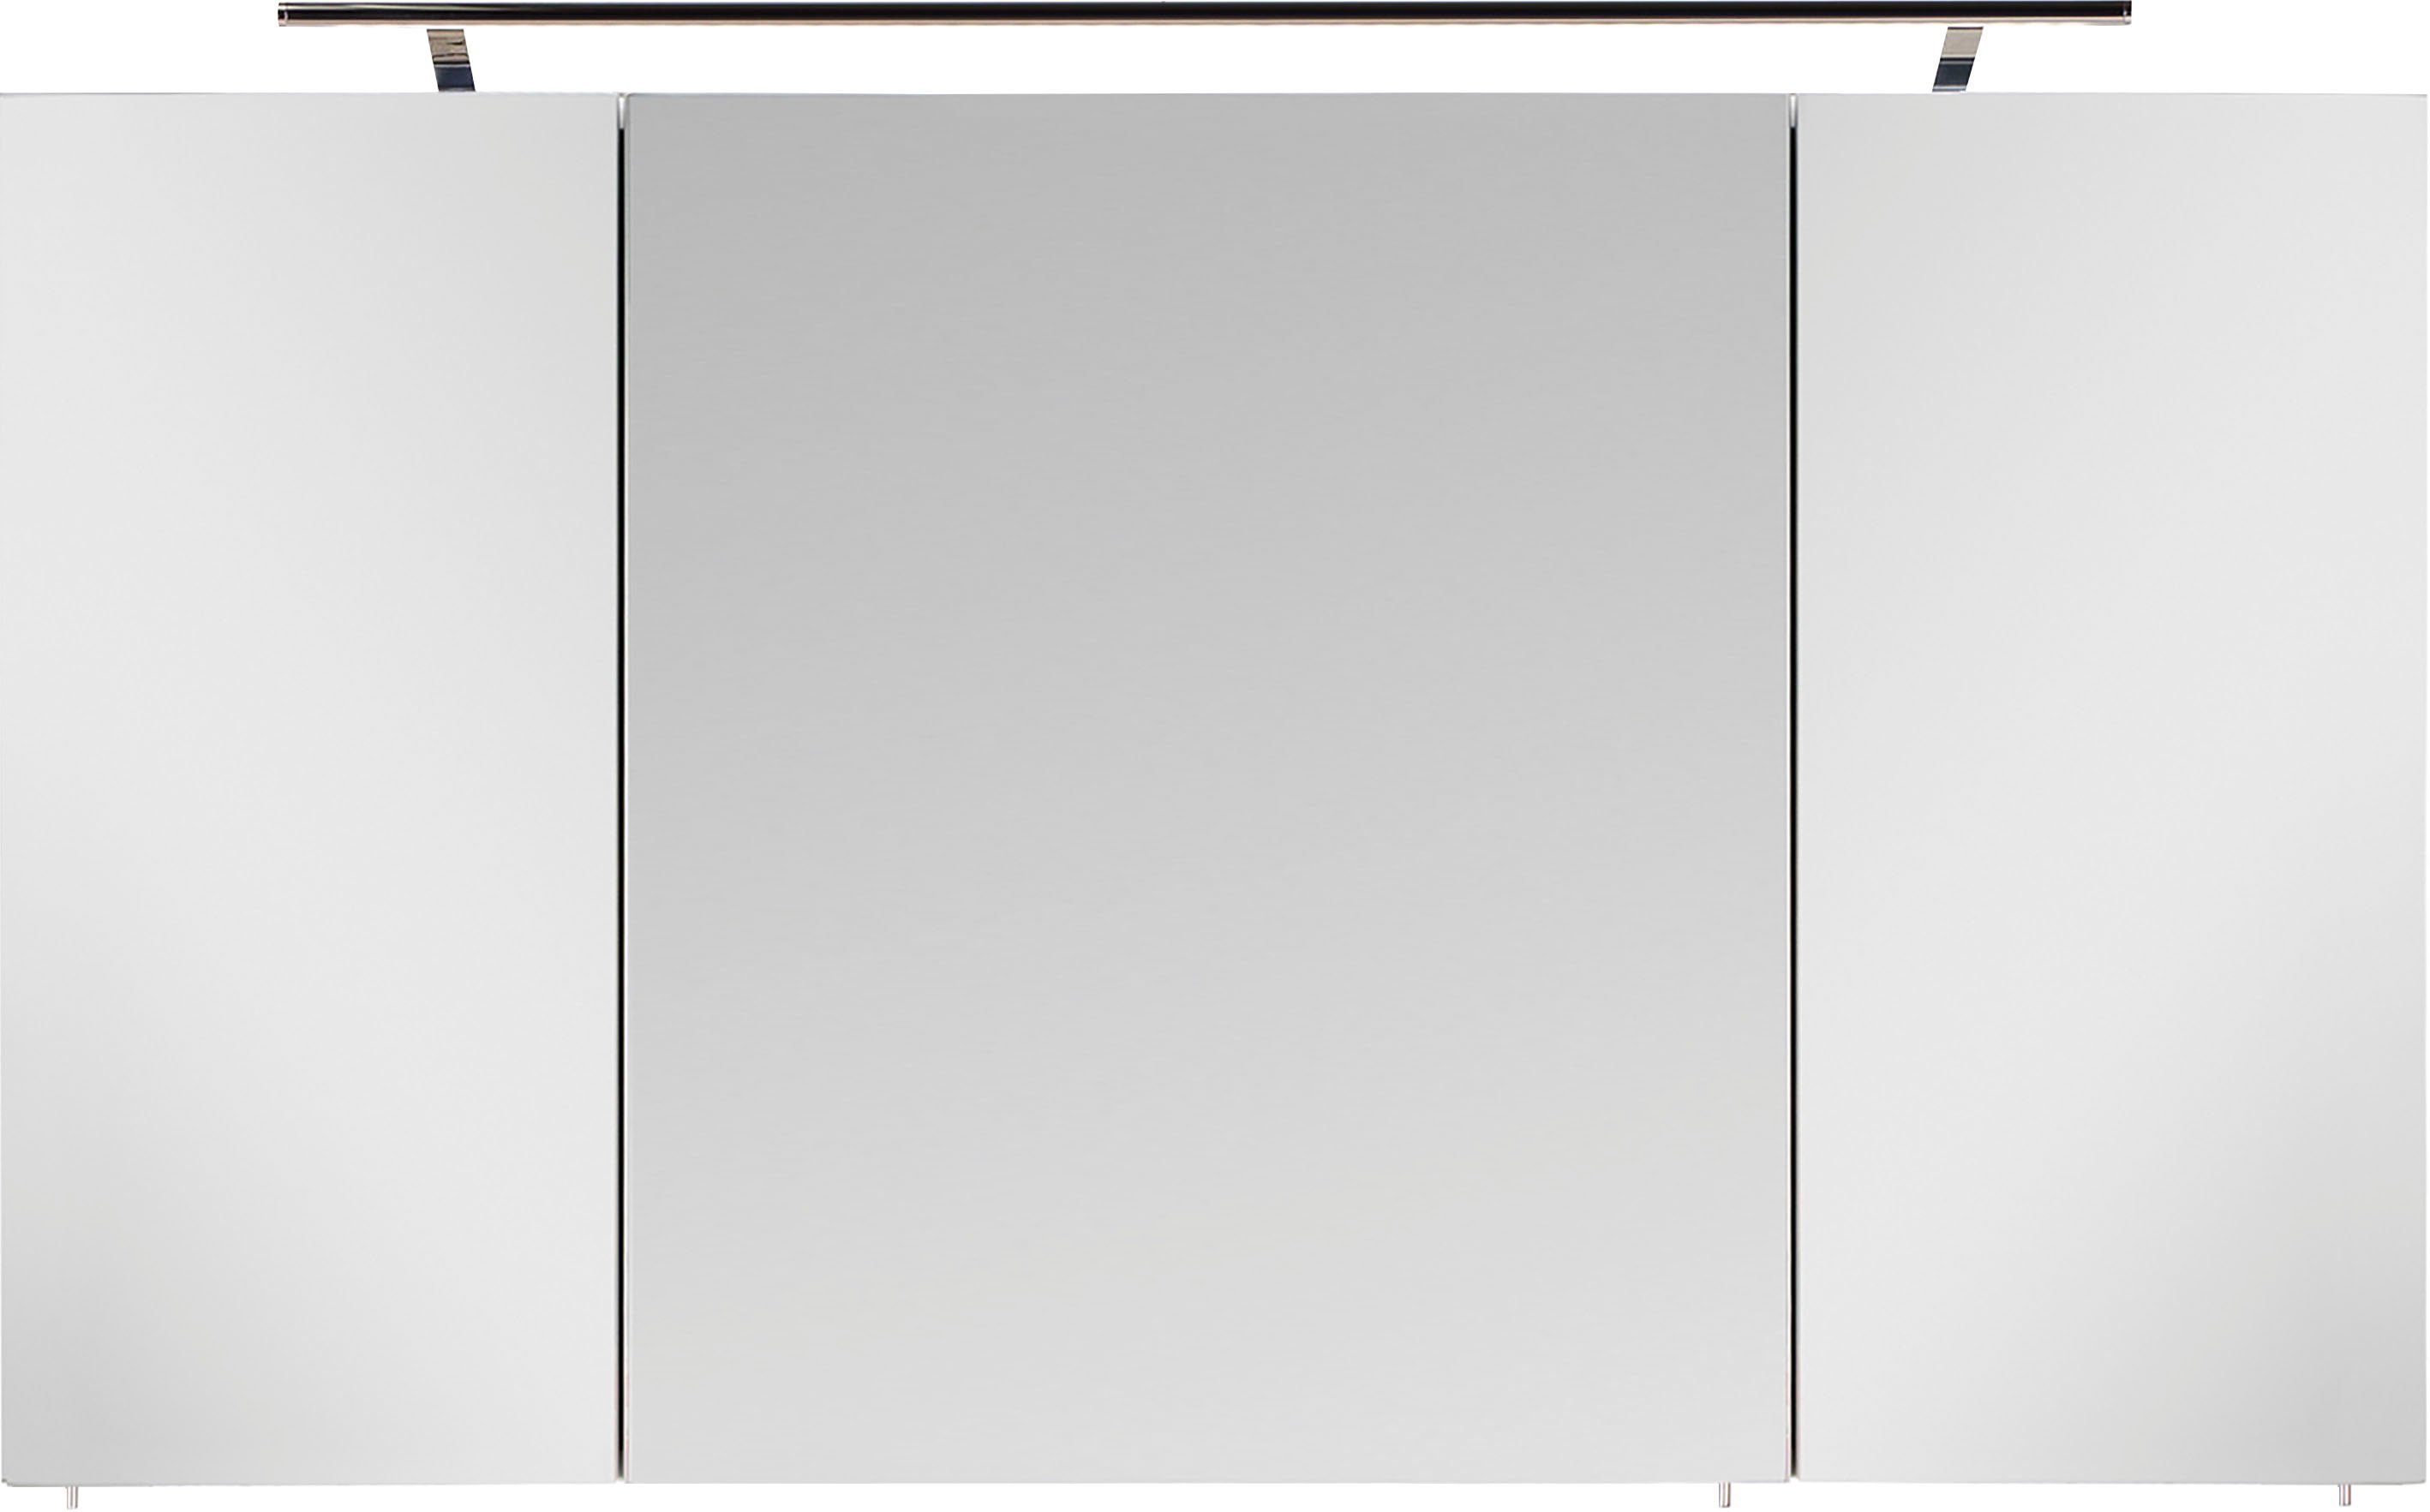 Breite 120 cm Spiegelschrank | 3040, graphit MARLIN kastanie kastanie graphit